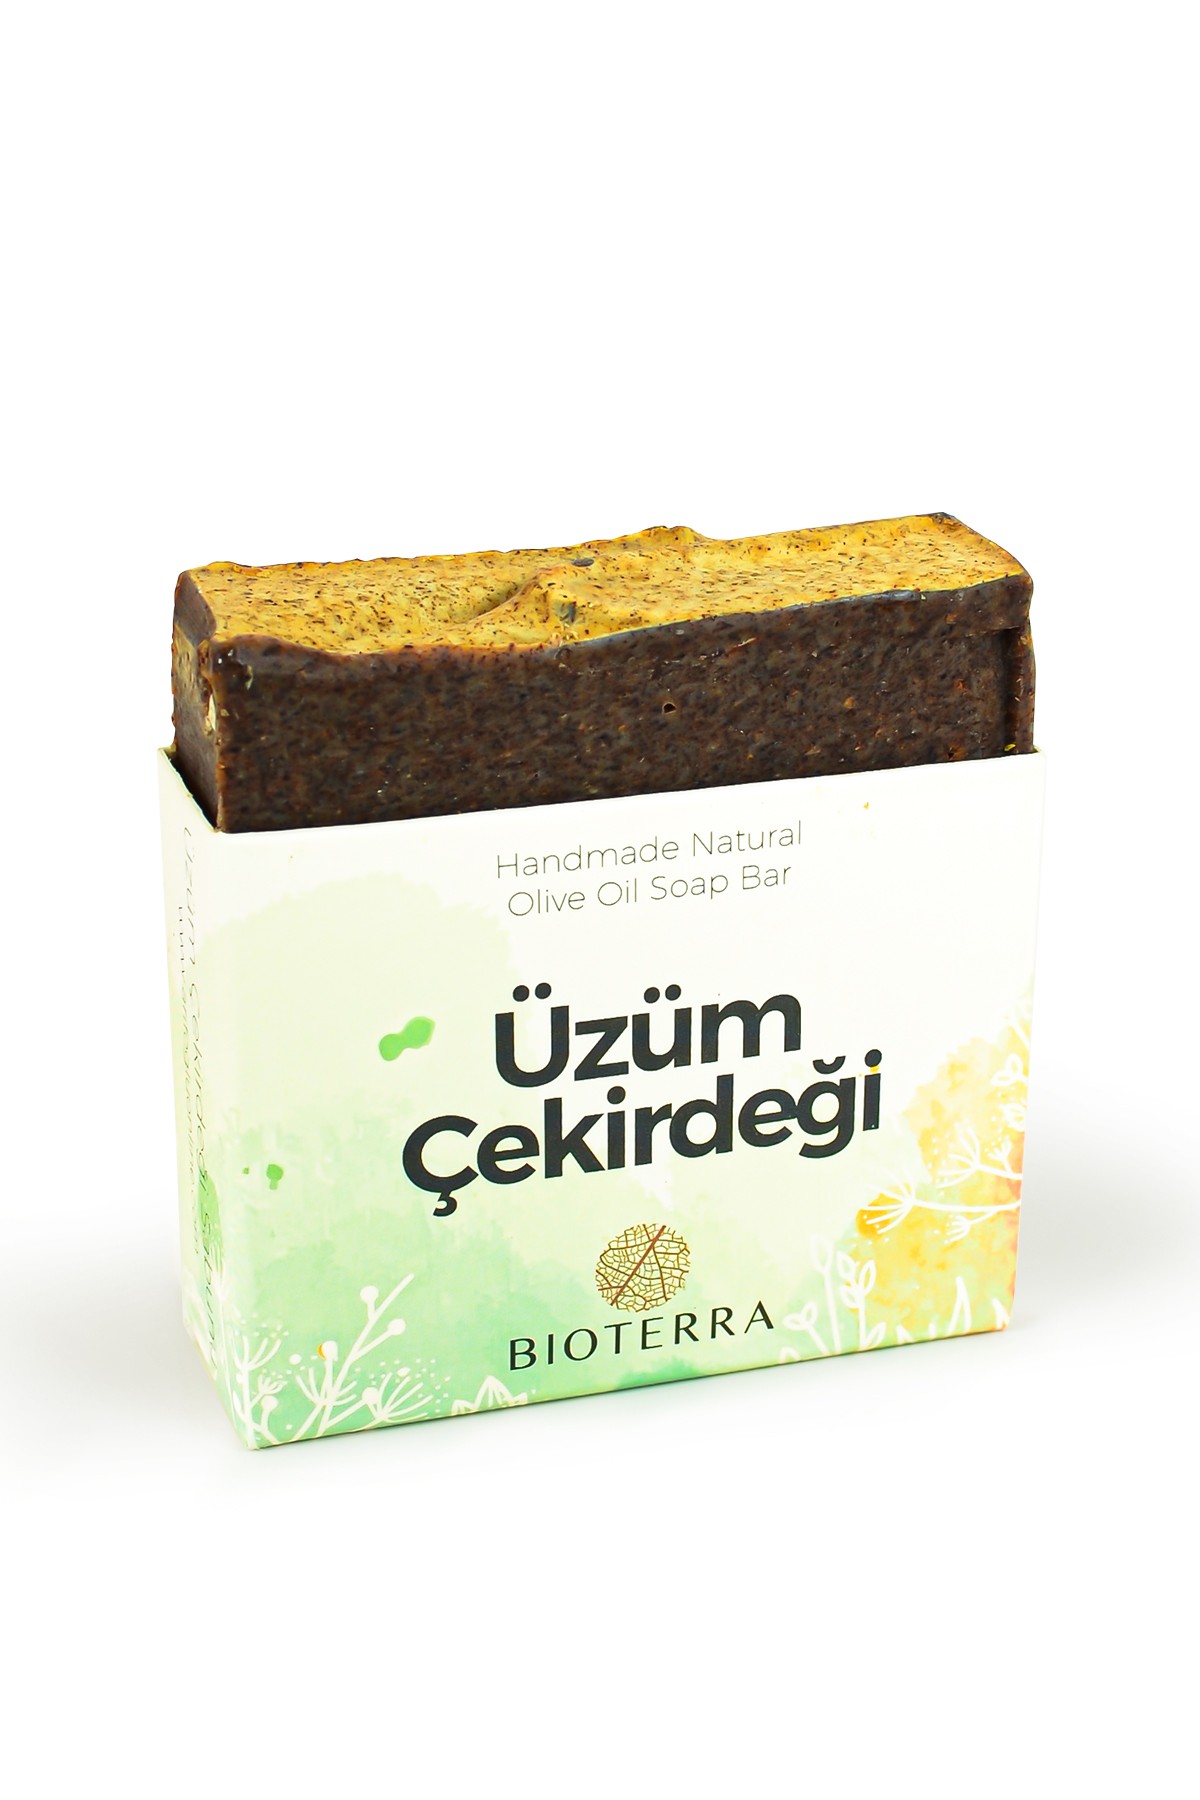 Bioterra Grapes Seeds Handmade Soap Bar 90 g / 3.17 oz